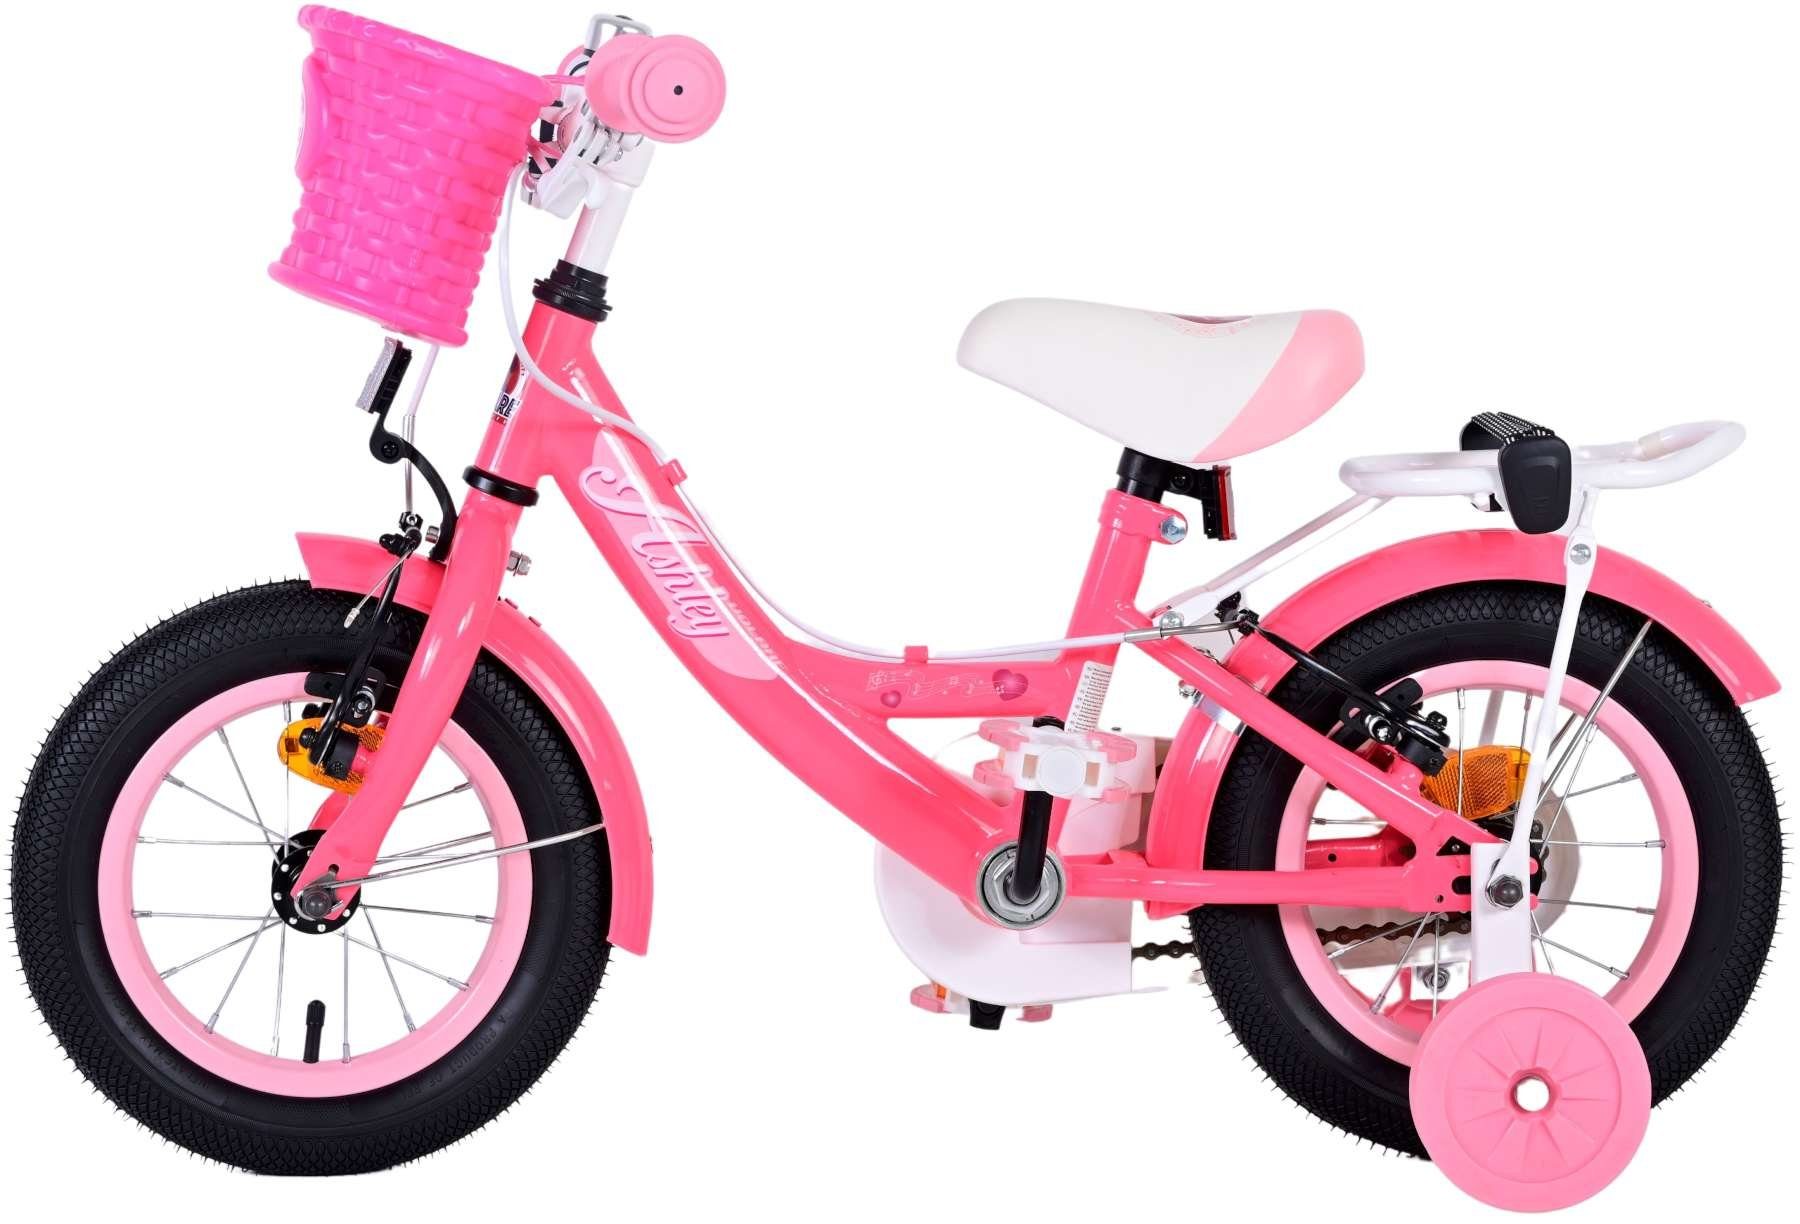 2x Stützräder Fahrrad Kinderfahrrad TPFSports 12 Zoll Sicherheitsgriffe), Volare Handbremse, Rutschfeste Zoll Gang, Kinderrad mit Fahrrad (Mädchen Kinder Laufrad - 12 Mädchen Ashley mit 1